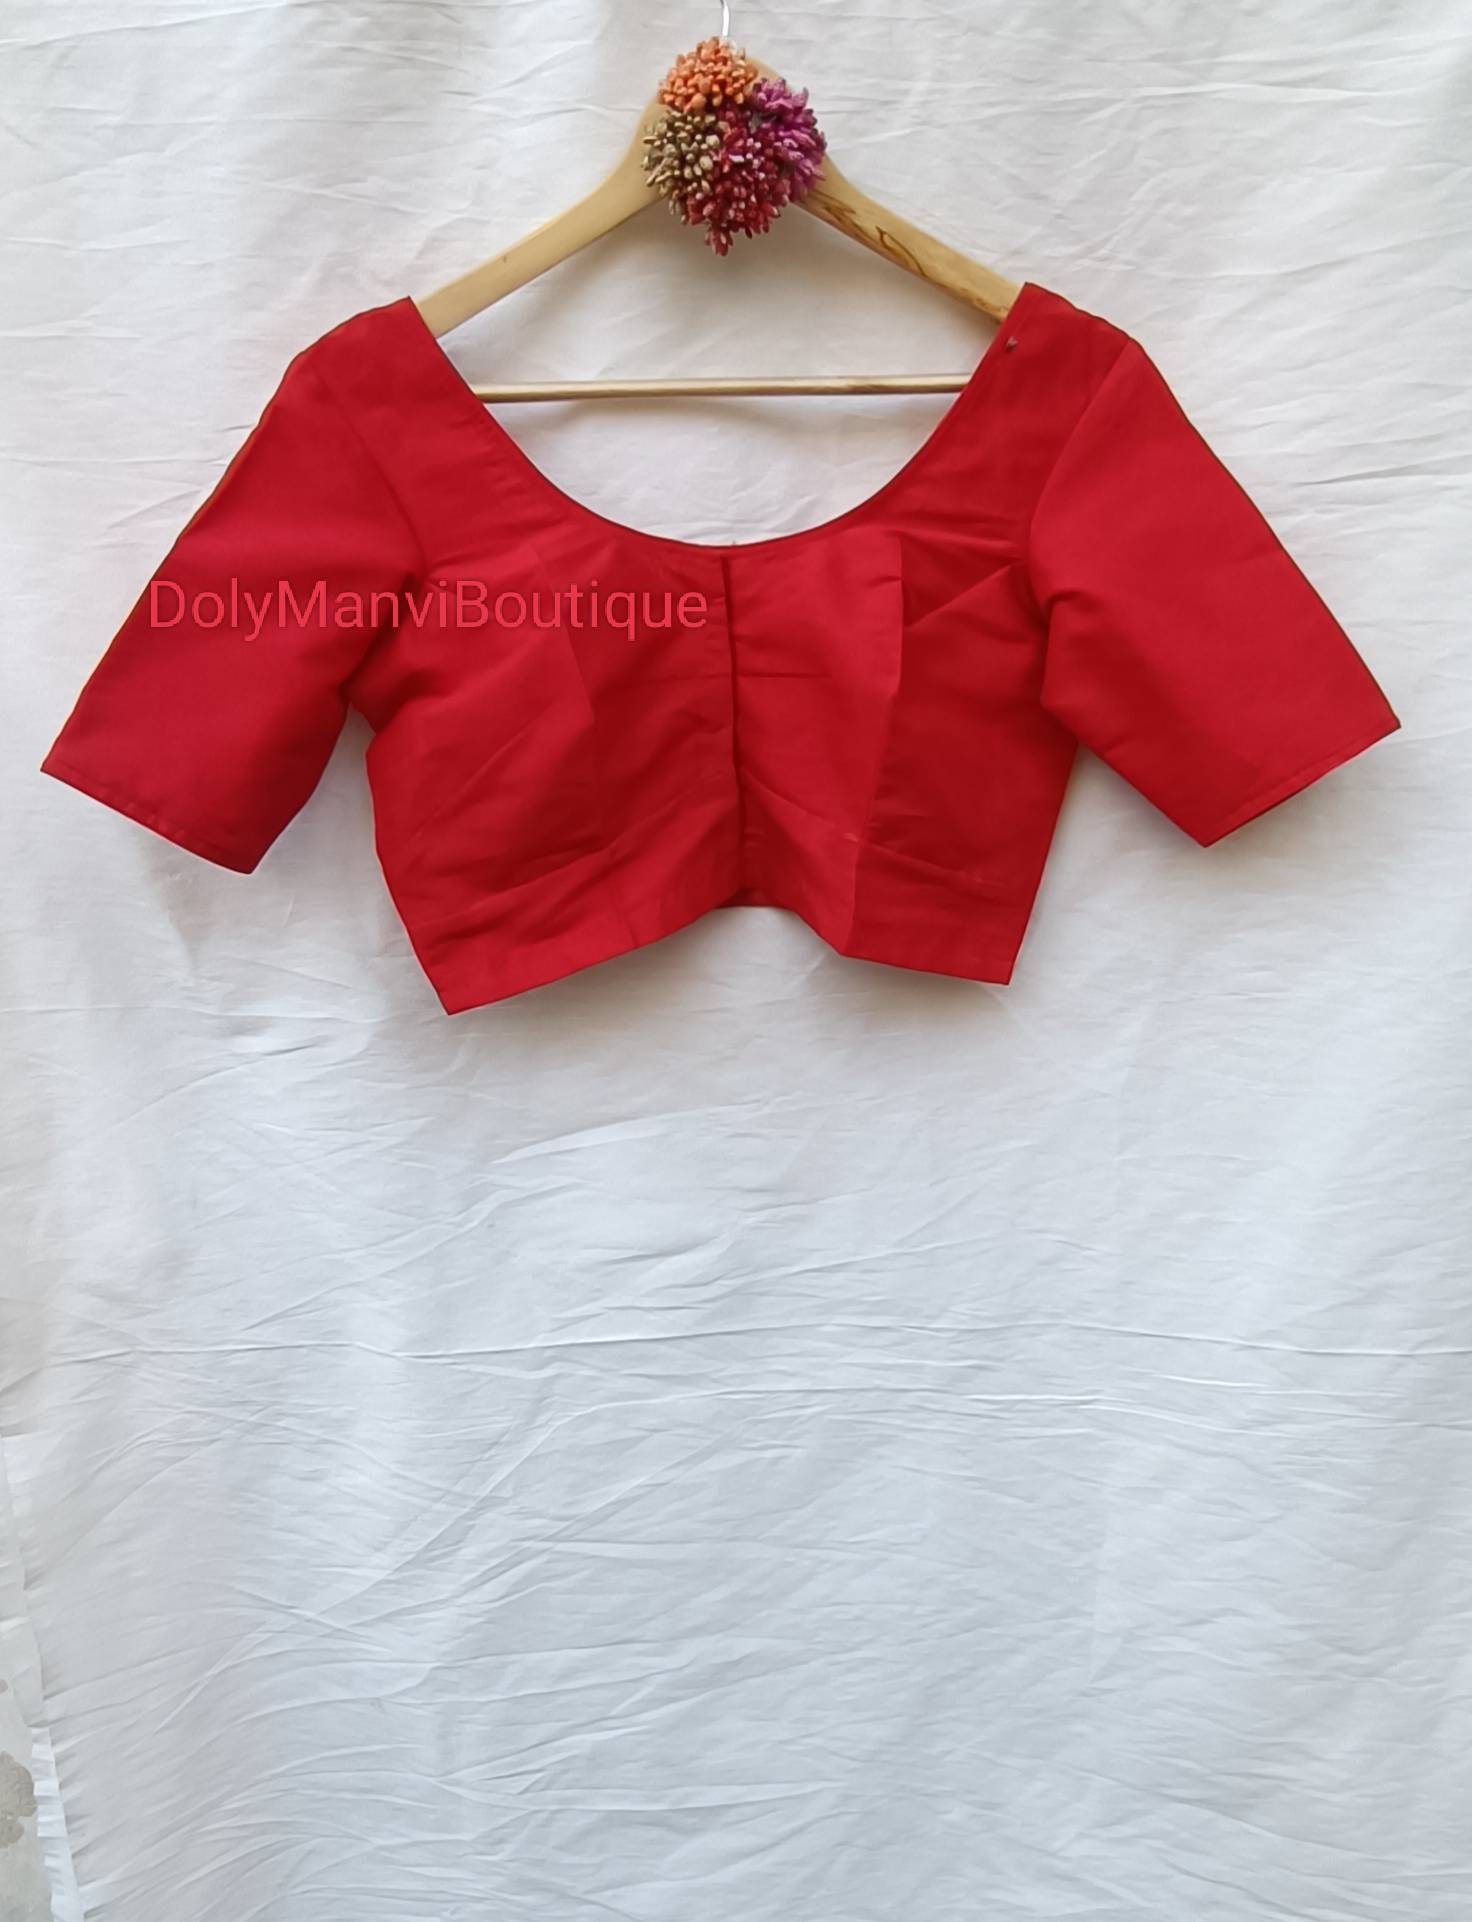 Handgemachte Designer Frauen Saree Bluse, Rote Sari Crop Top, Readymade Bluse von DolyManviBoutique